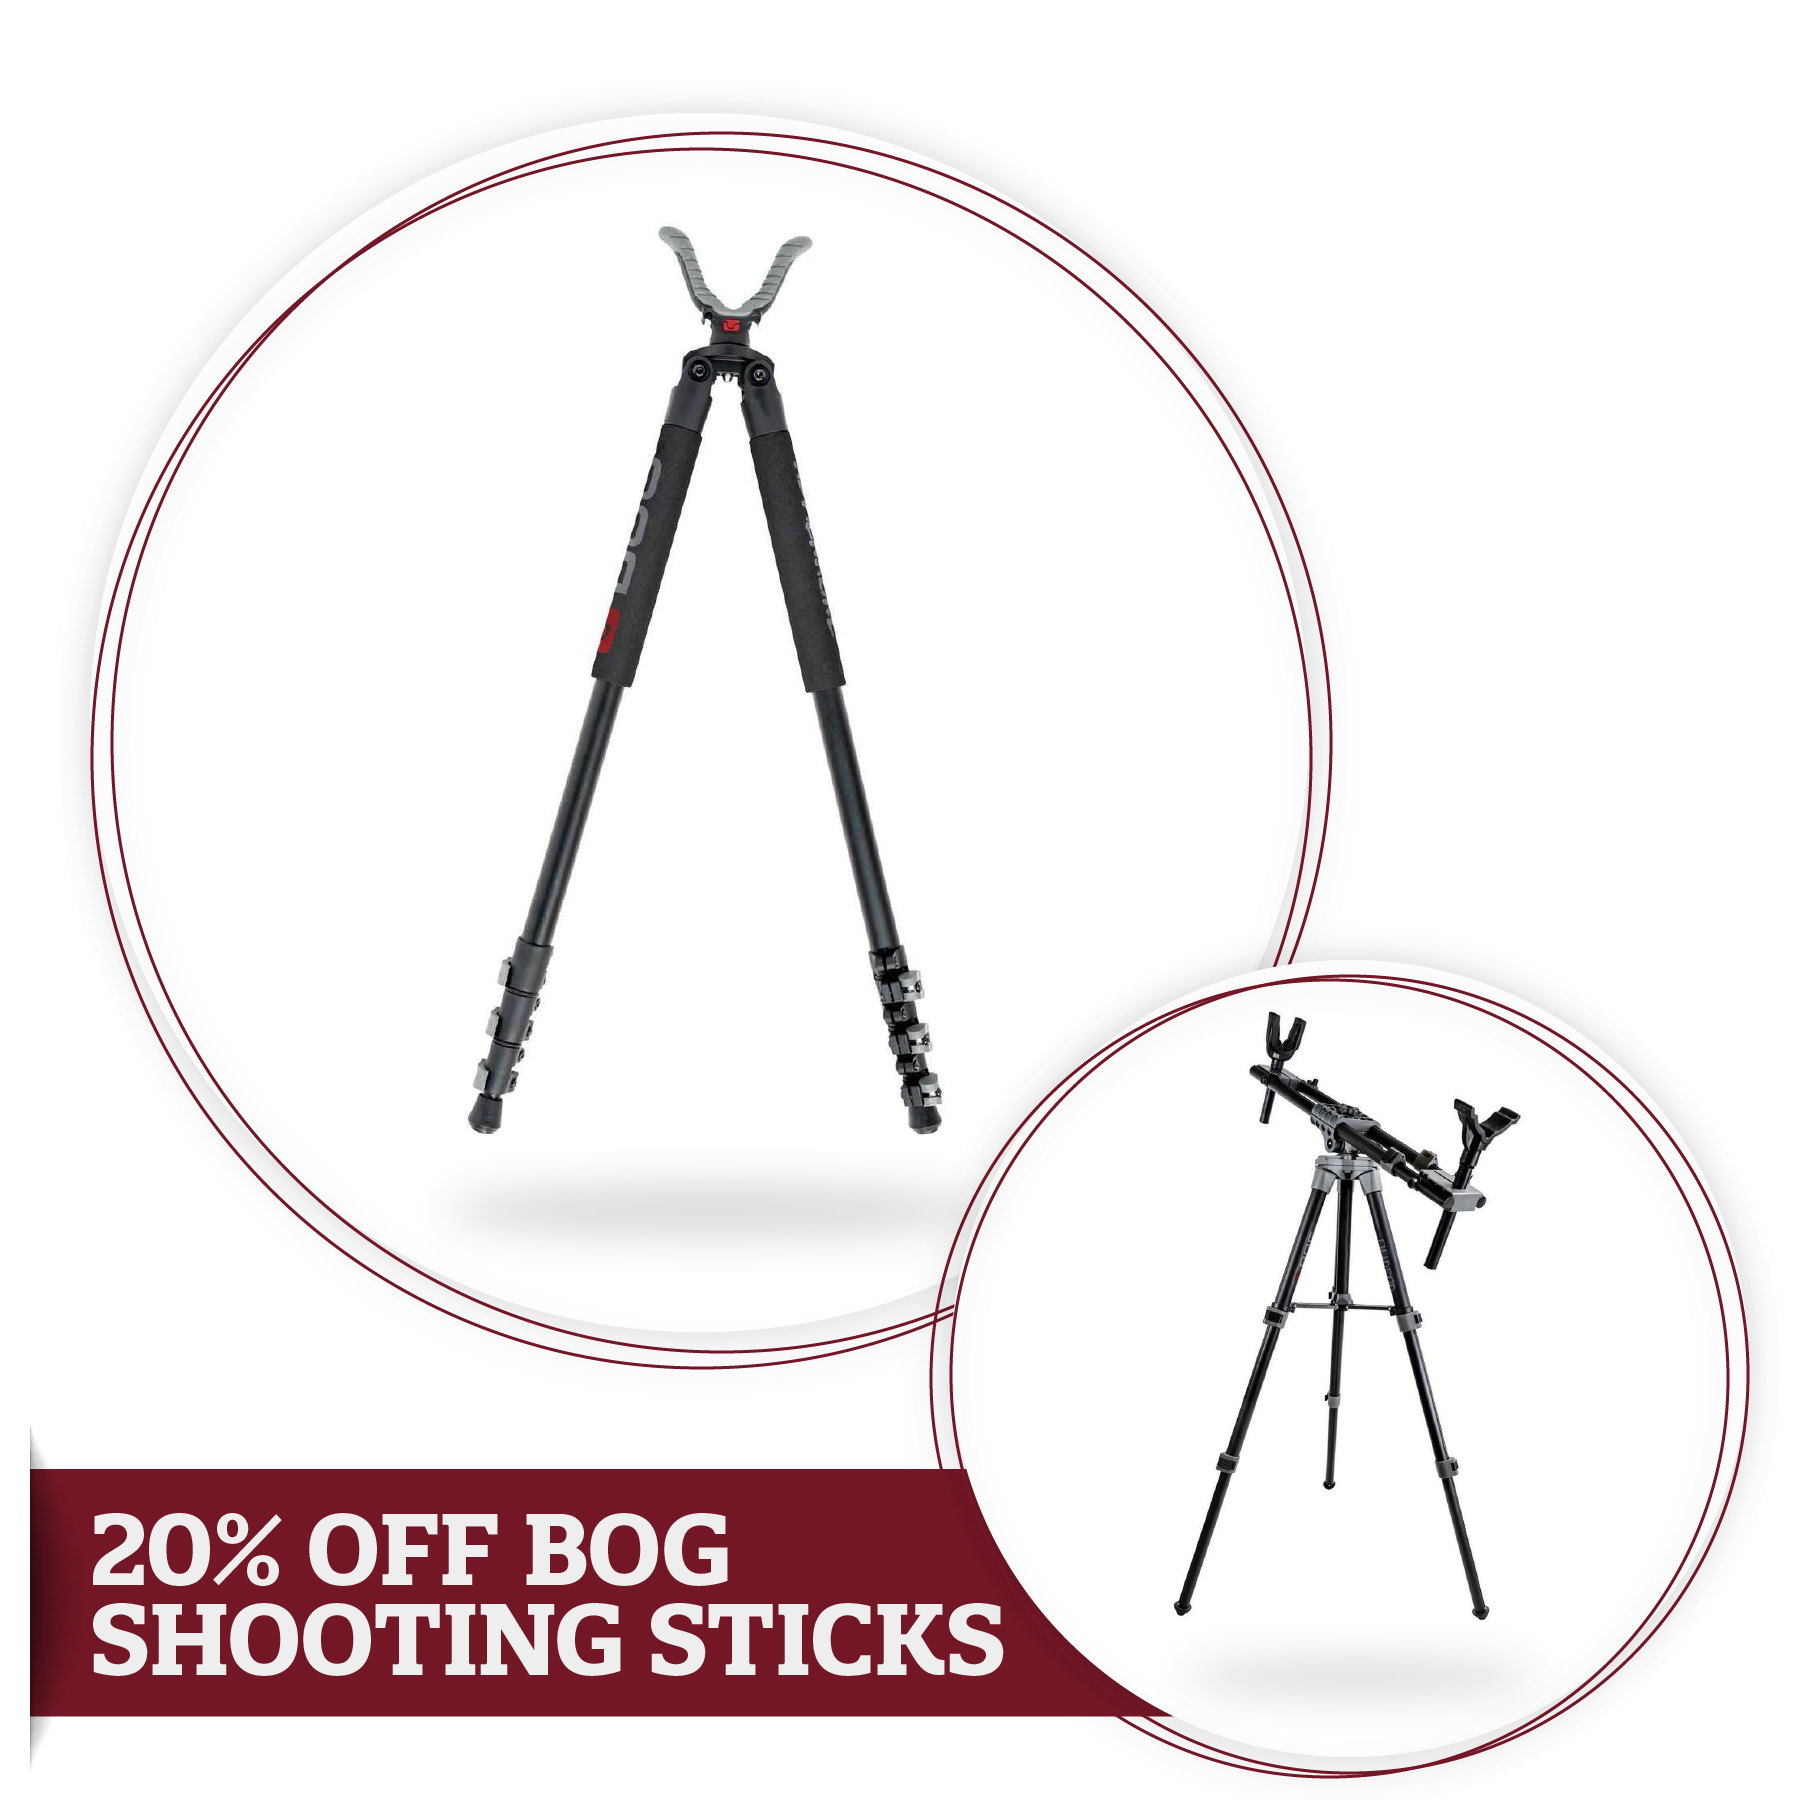 20% off BOG Shooting Sticks